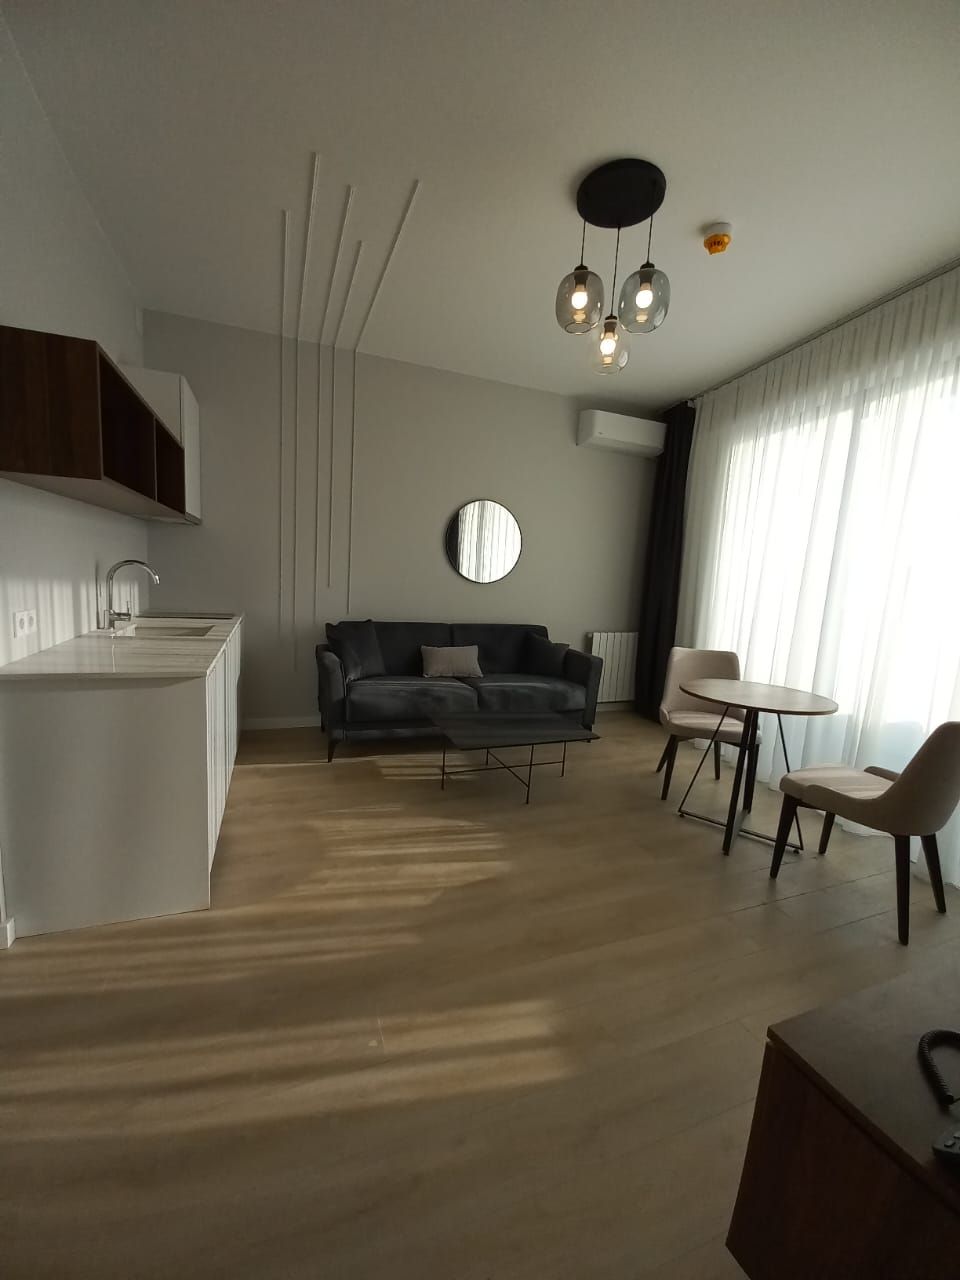 Apartment in Batumi, Georgia, 44 sq.m - picture 1